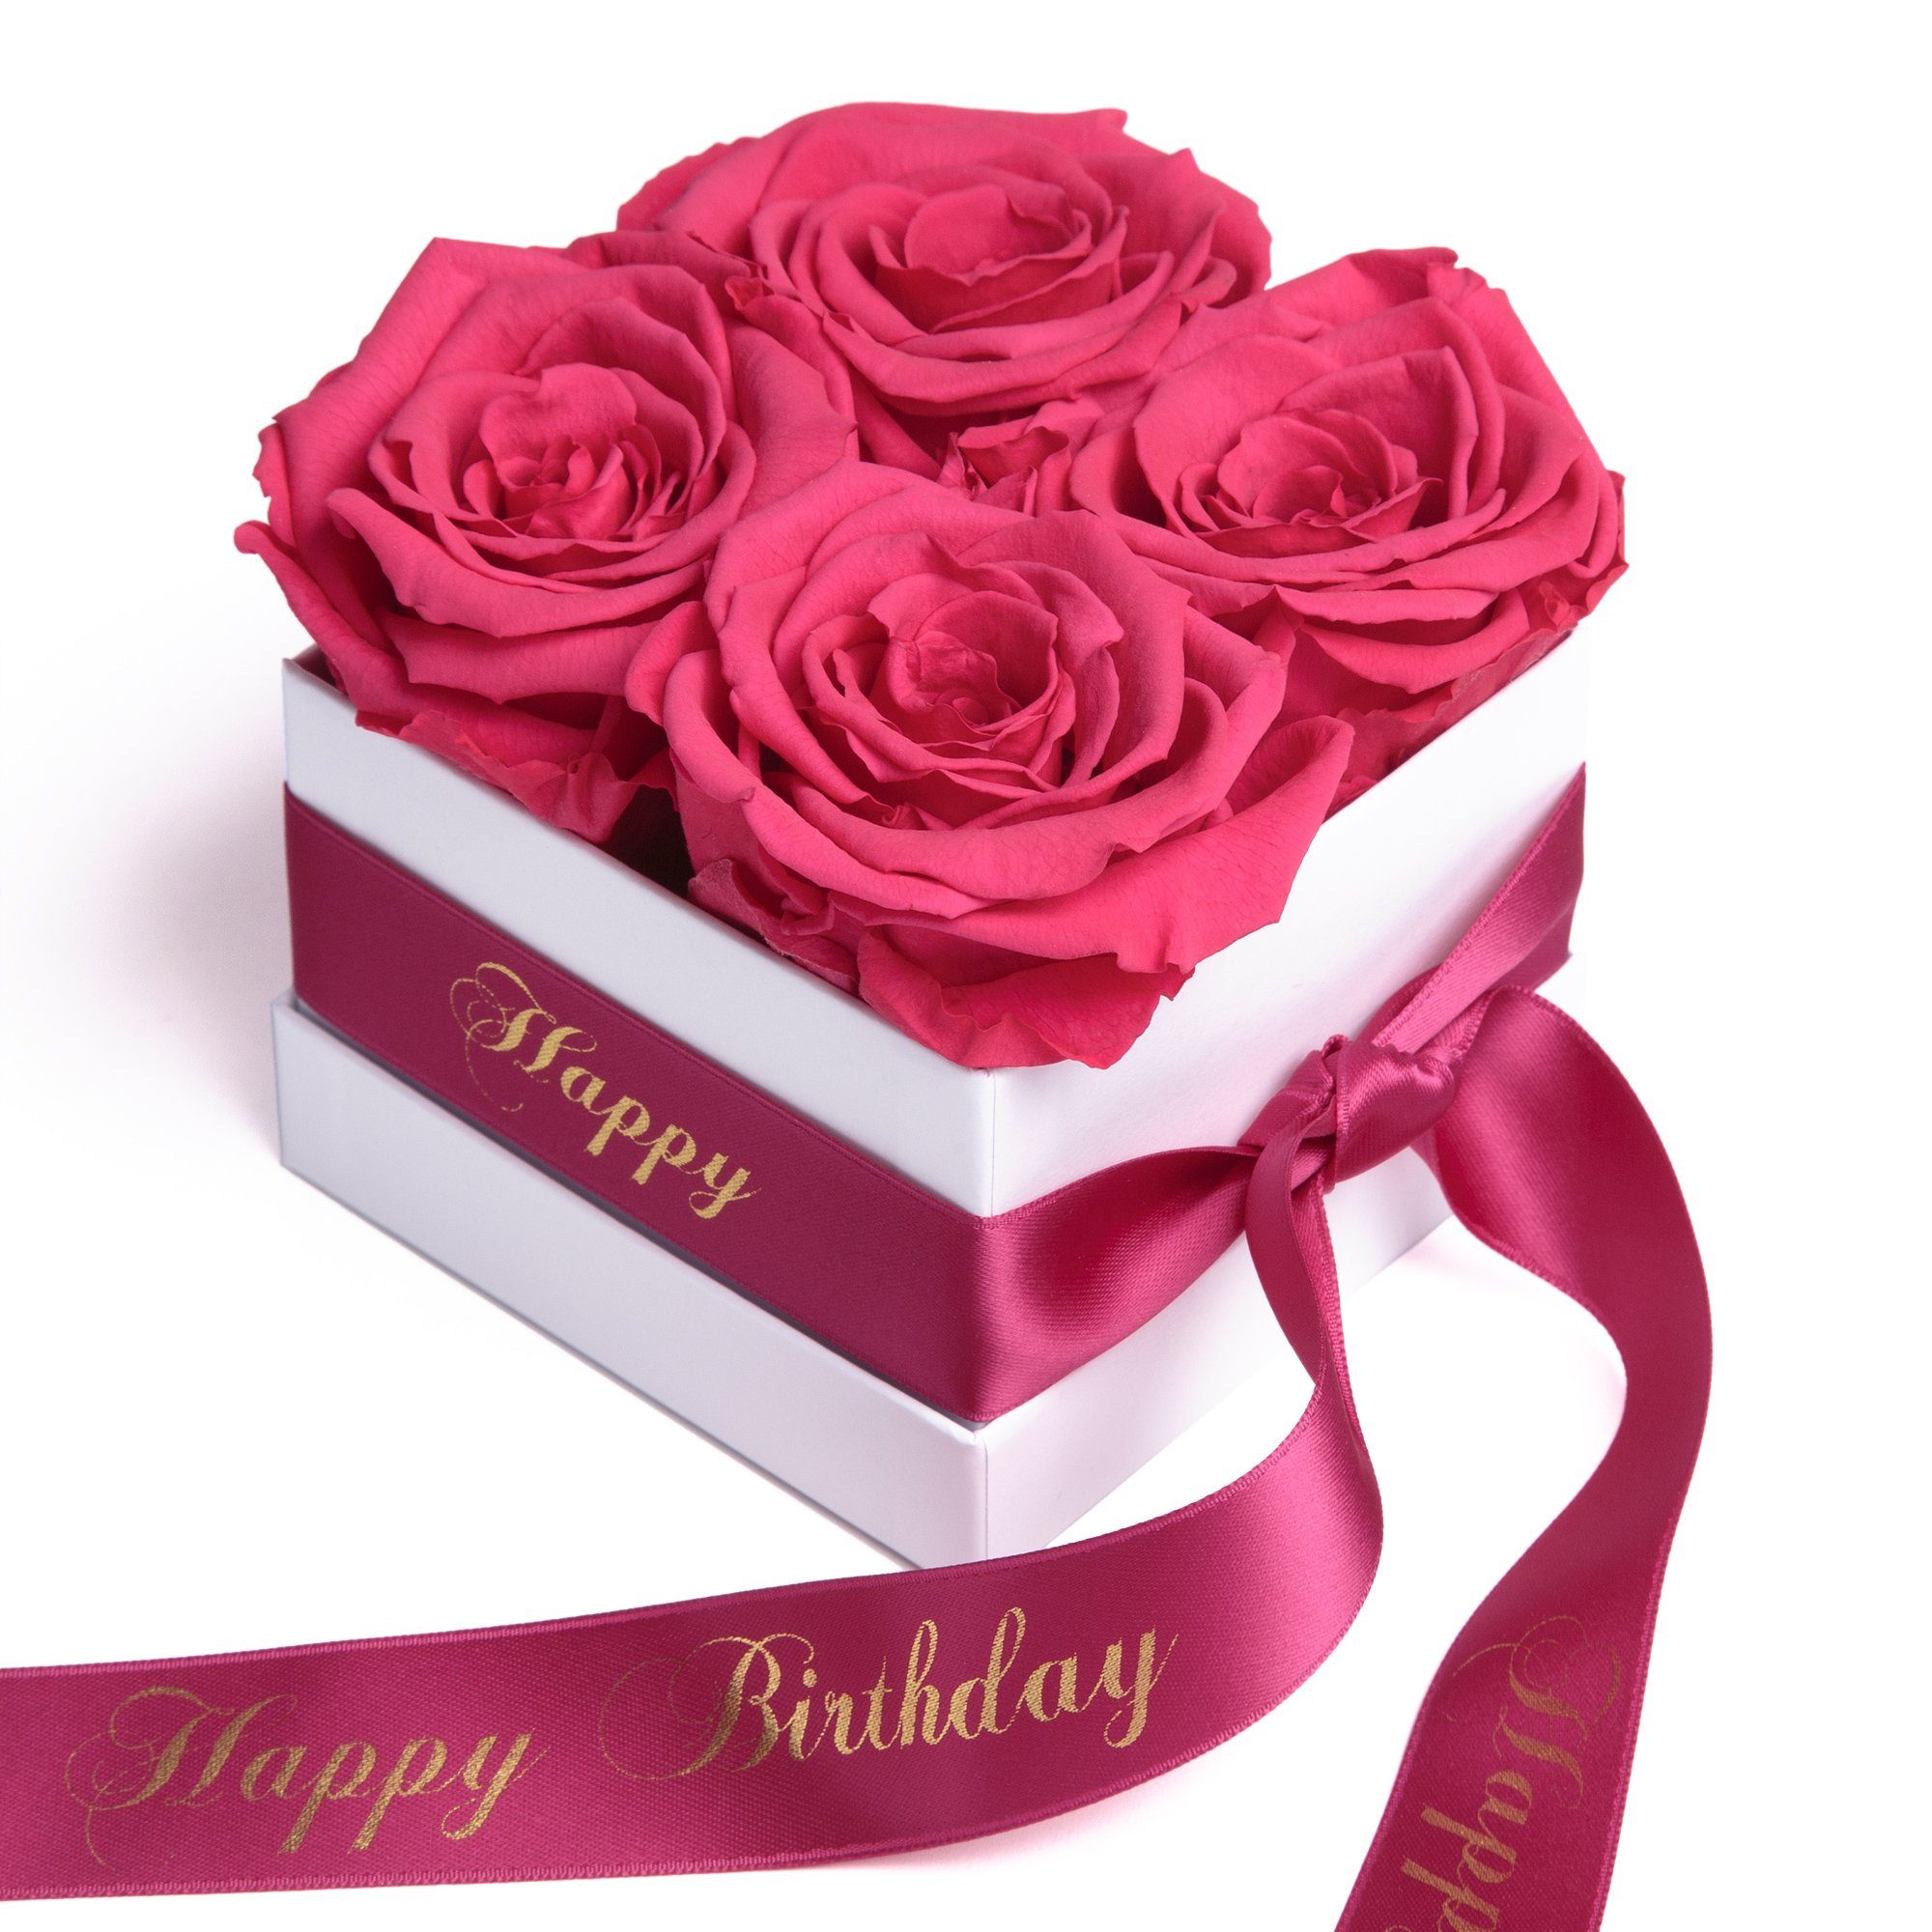 Kunstblume Infinity Rosenbox Happy Birthday Geschenk Geburtstag für Frauen Rose, ROSEMARIE SCHULZ Heidelberg, Höhe 8.5 cm, echte Rosen haltbar 3 Jahre pink